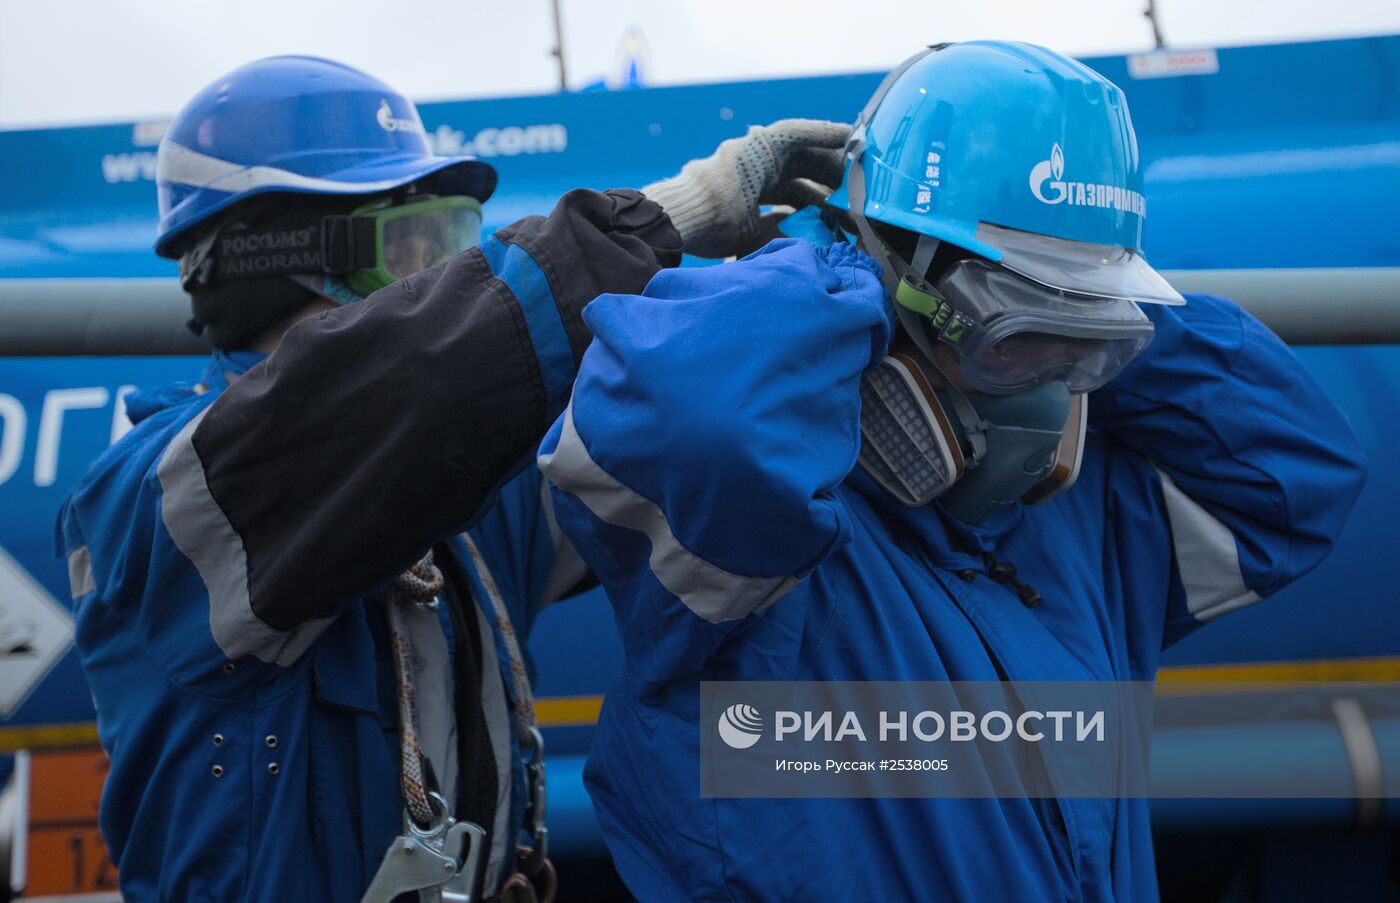 Работа заправочной станции "Газпромнефть" в Санкт-Петербурге